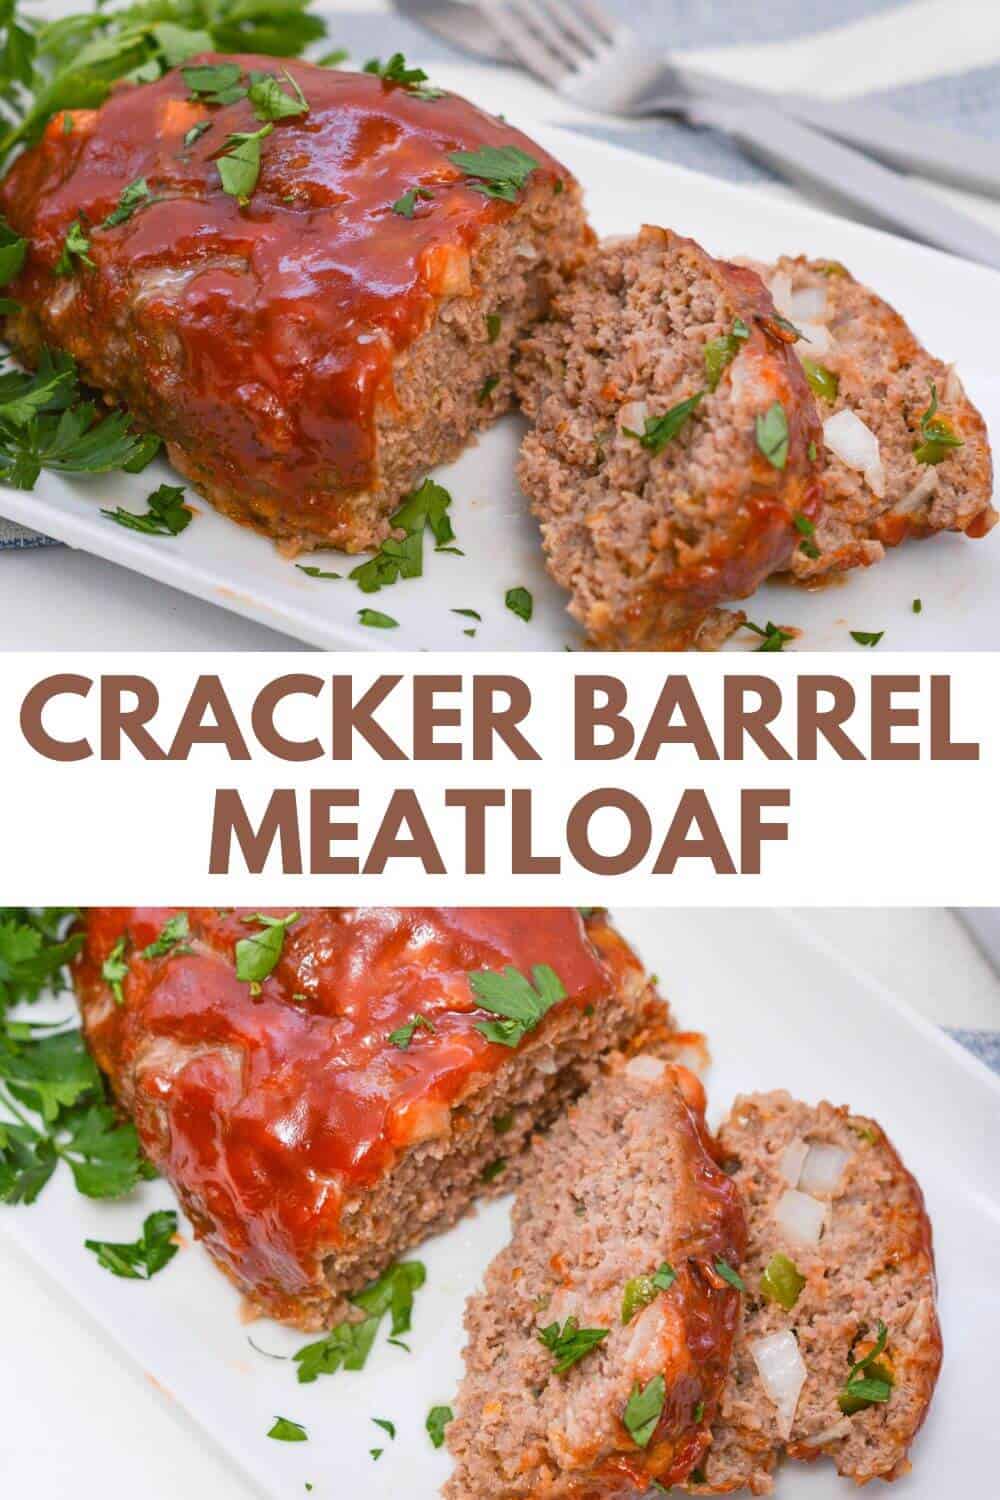 Cracker barrel meatloaf on platter.